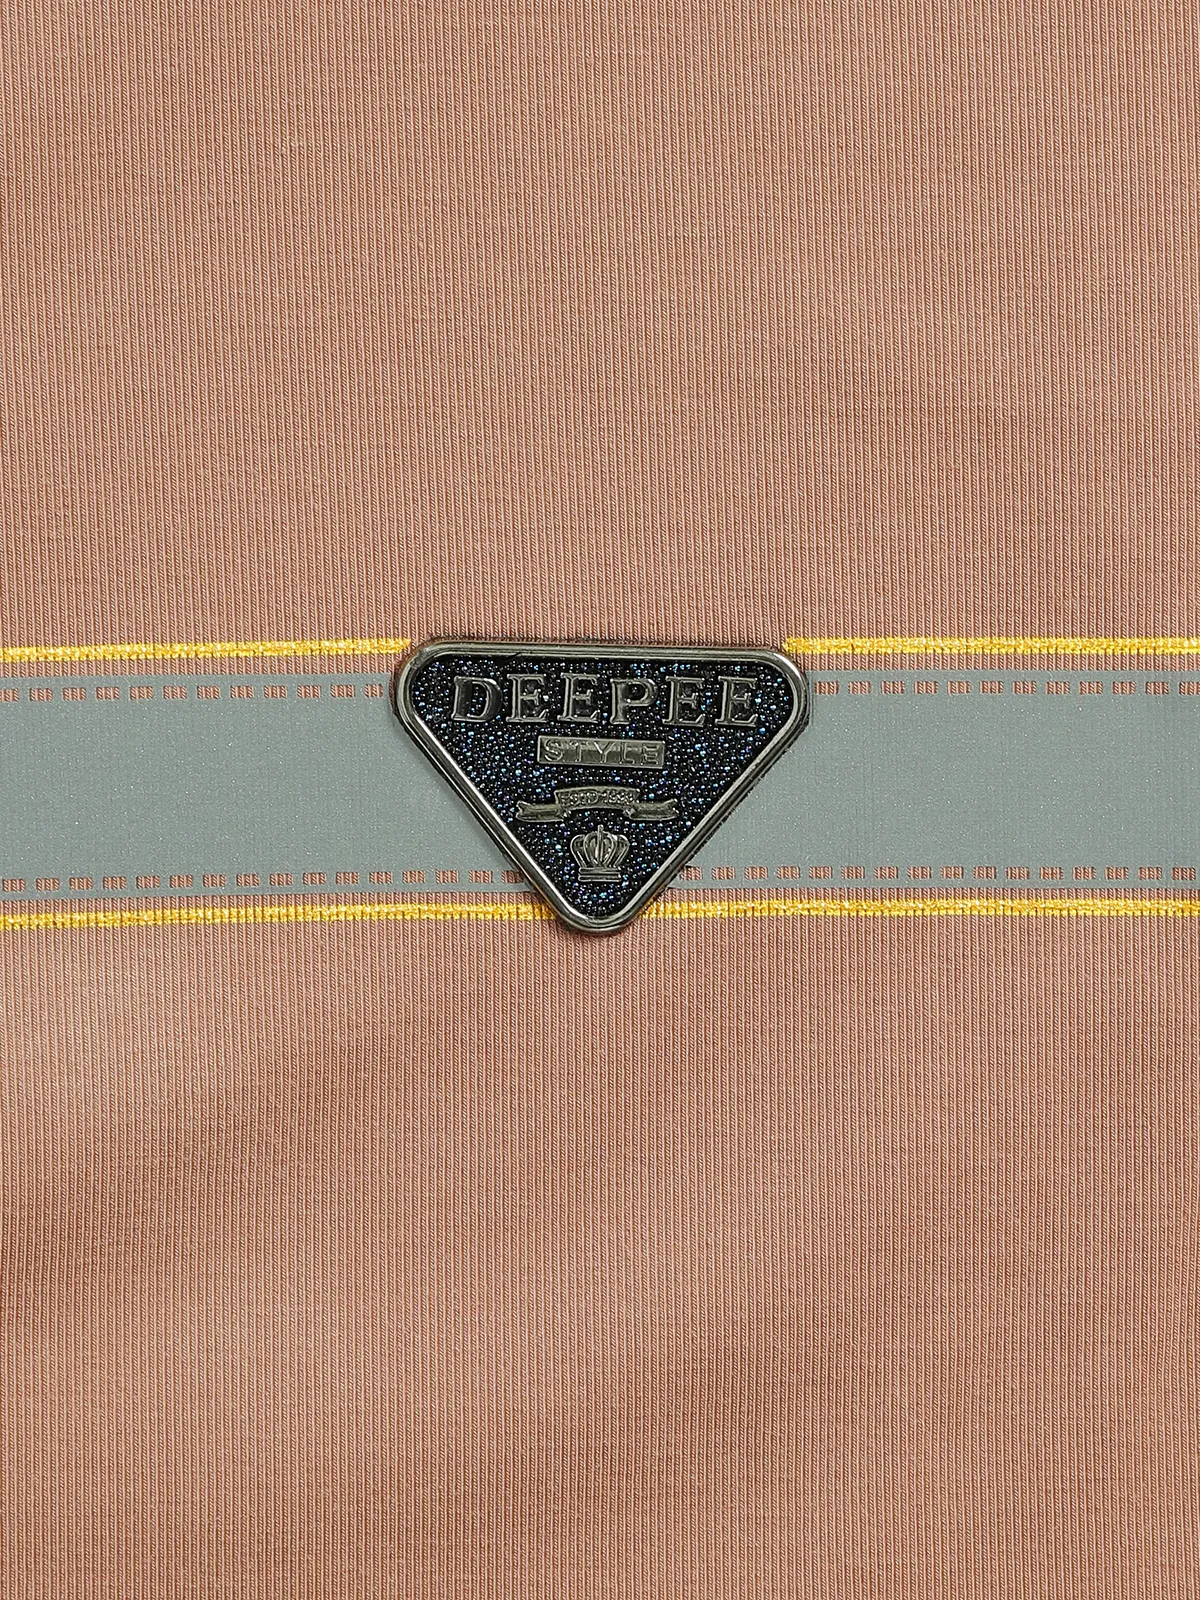 DeePee plain beige cotton t shirt